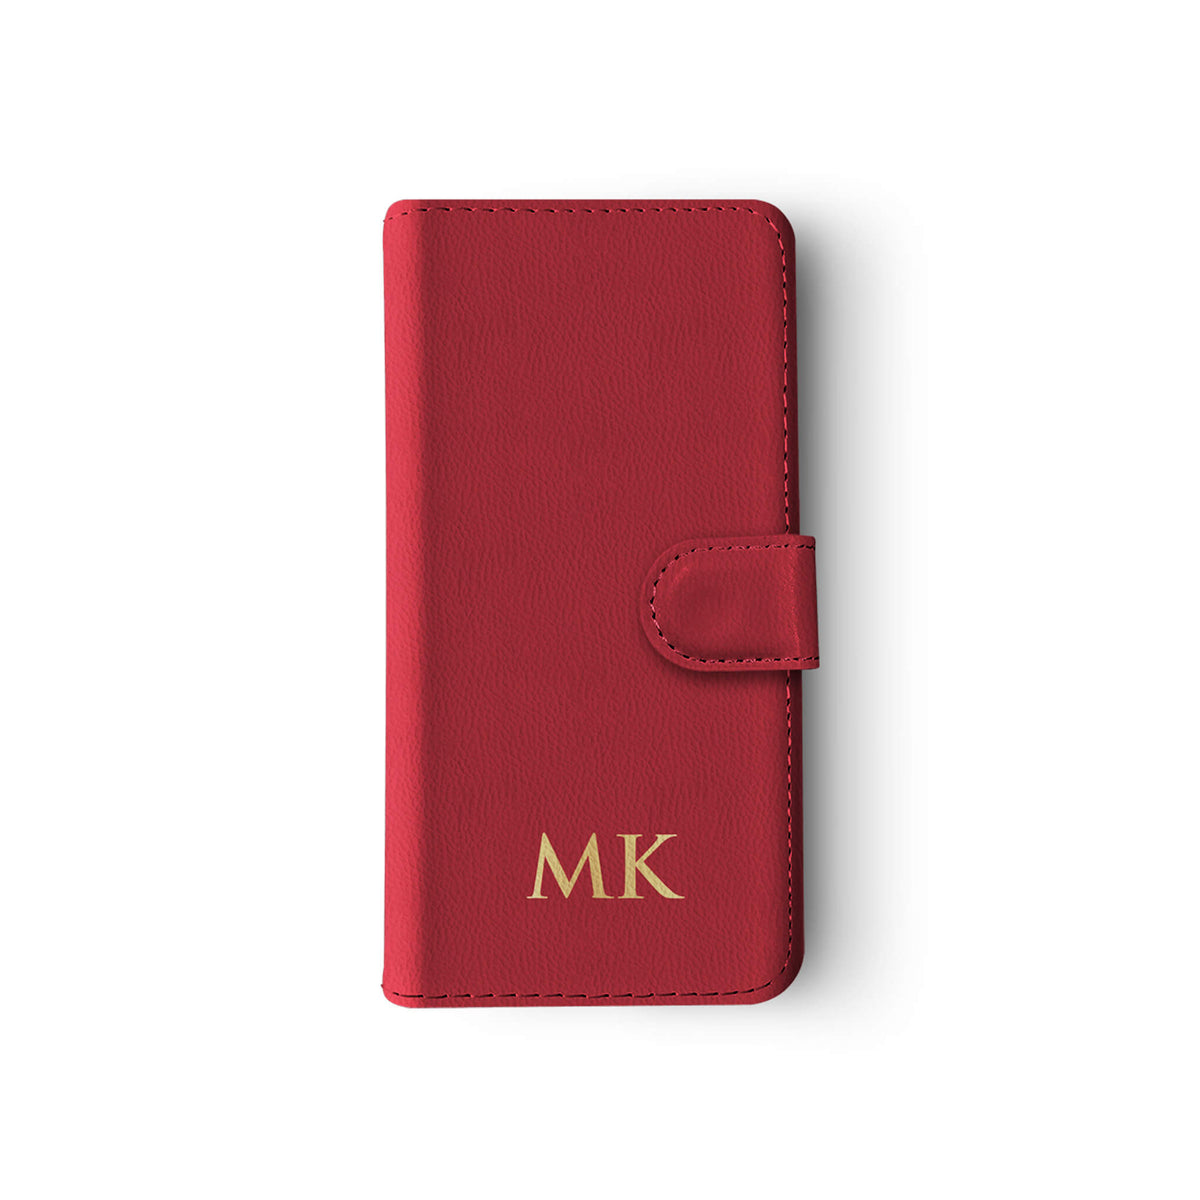 Personalised Wallet Flip Case Custom Name Red